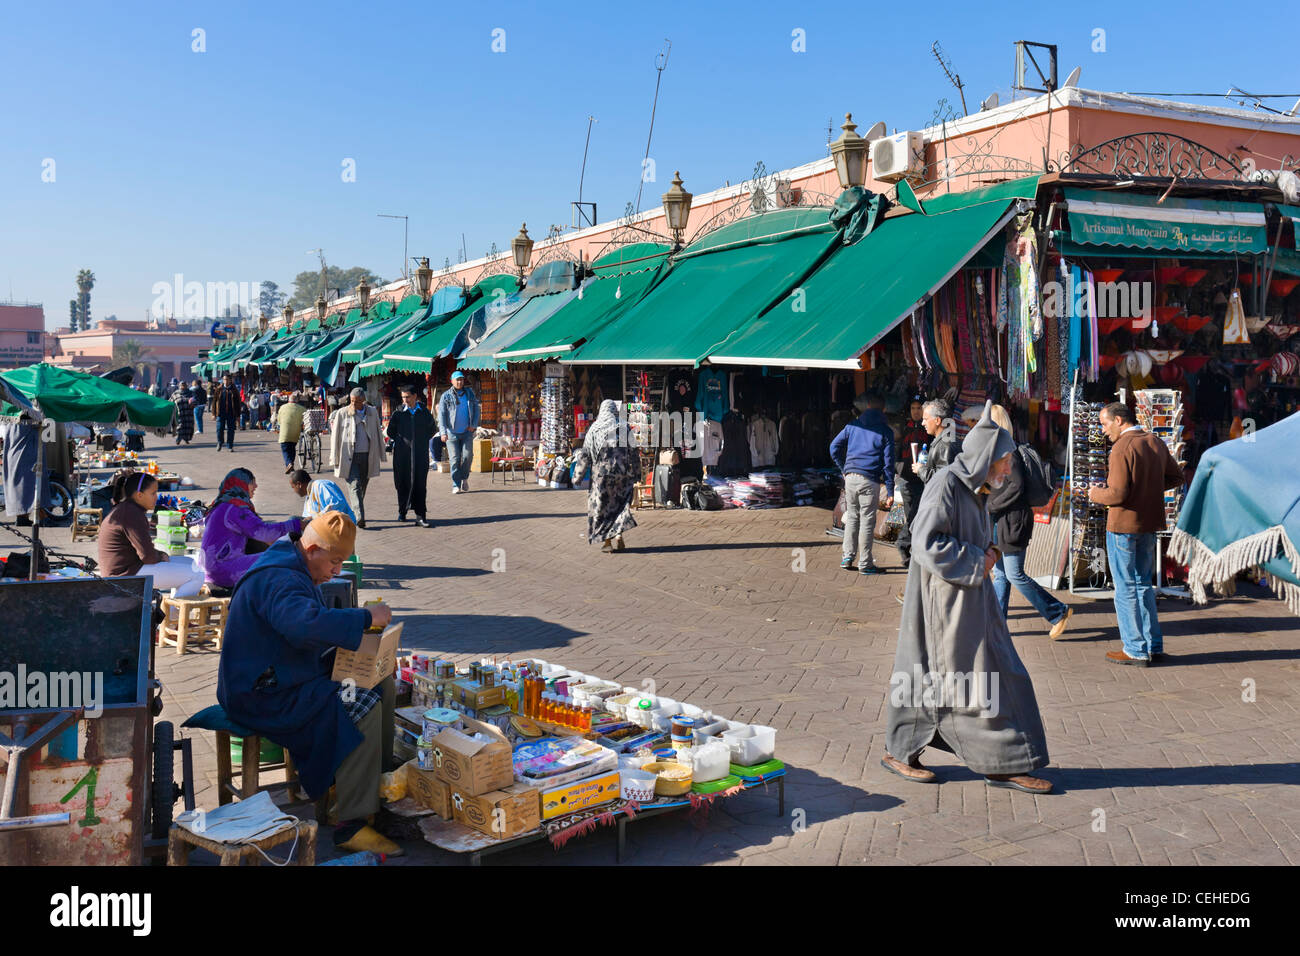 Étals et boutiques le long de la bordure de place Jamaa el Fna, Marrakech, Maroc, Afrique du Nord Banque D'Images